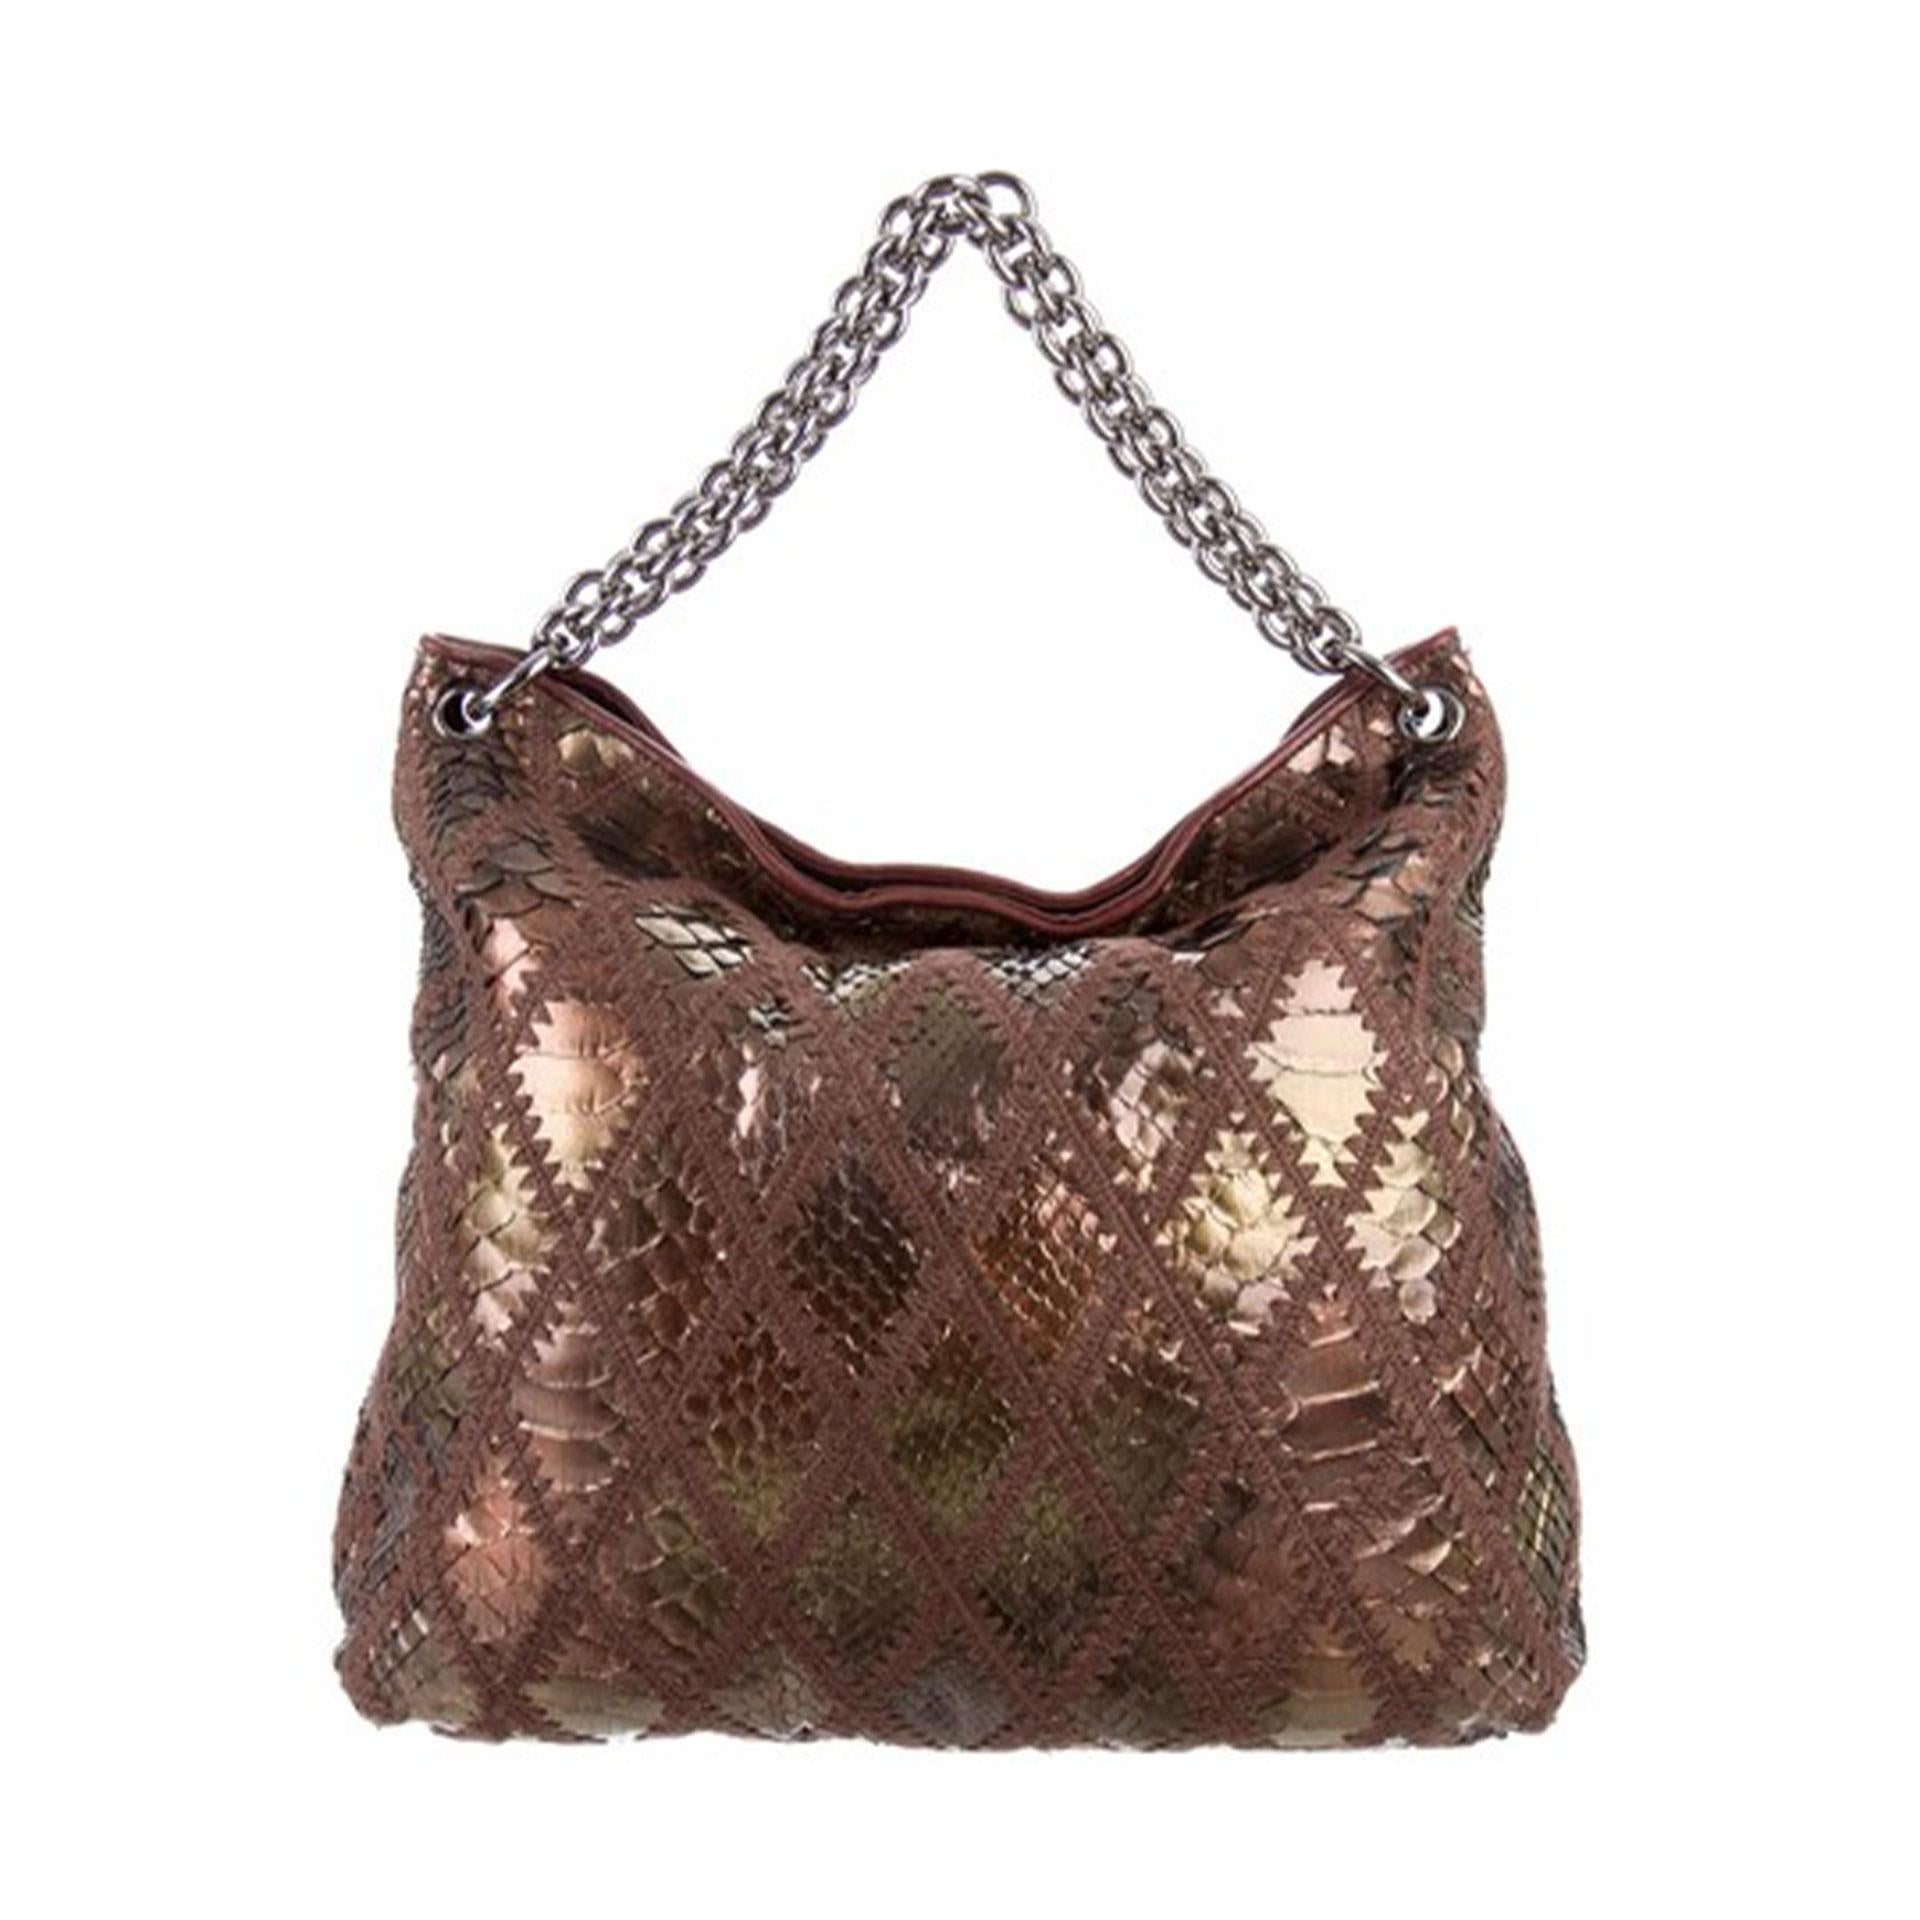 metallic bronze handbags